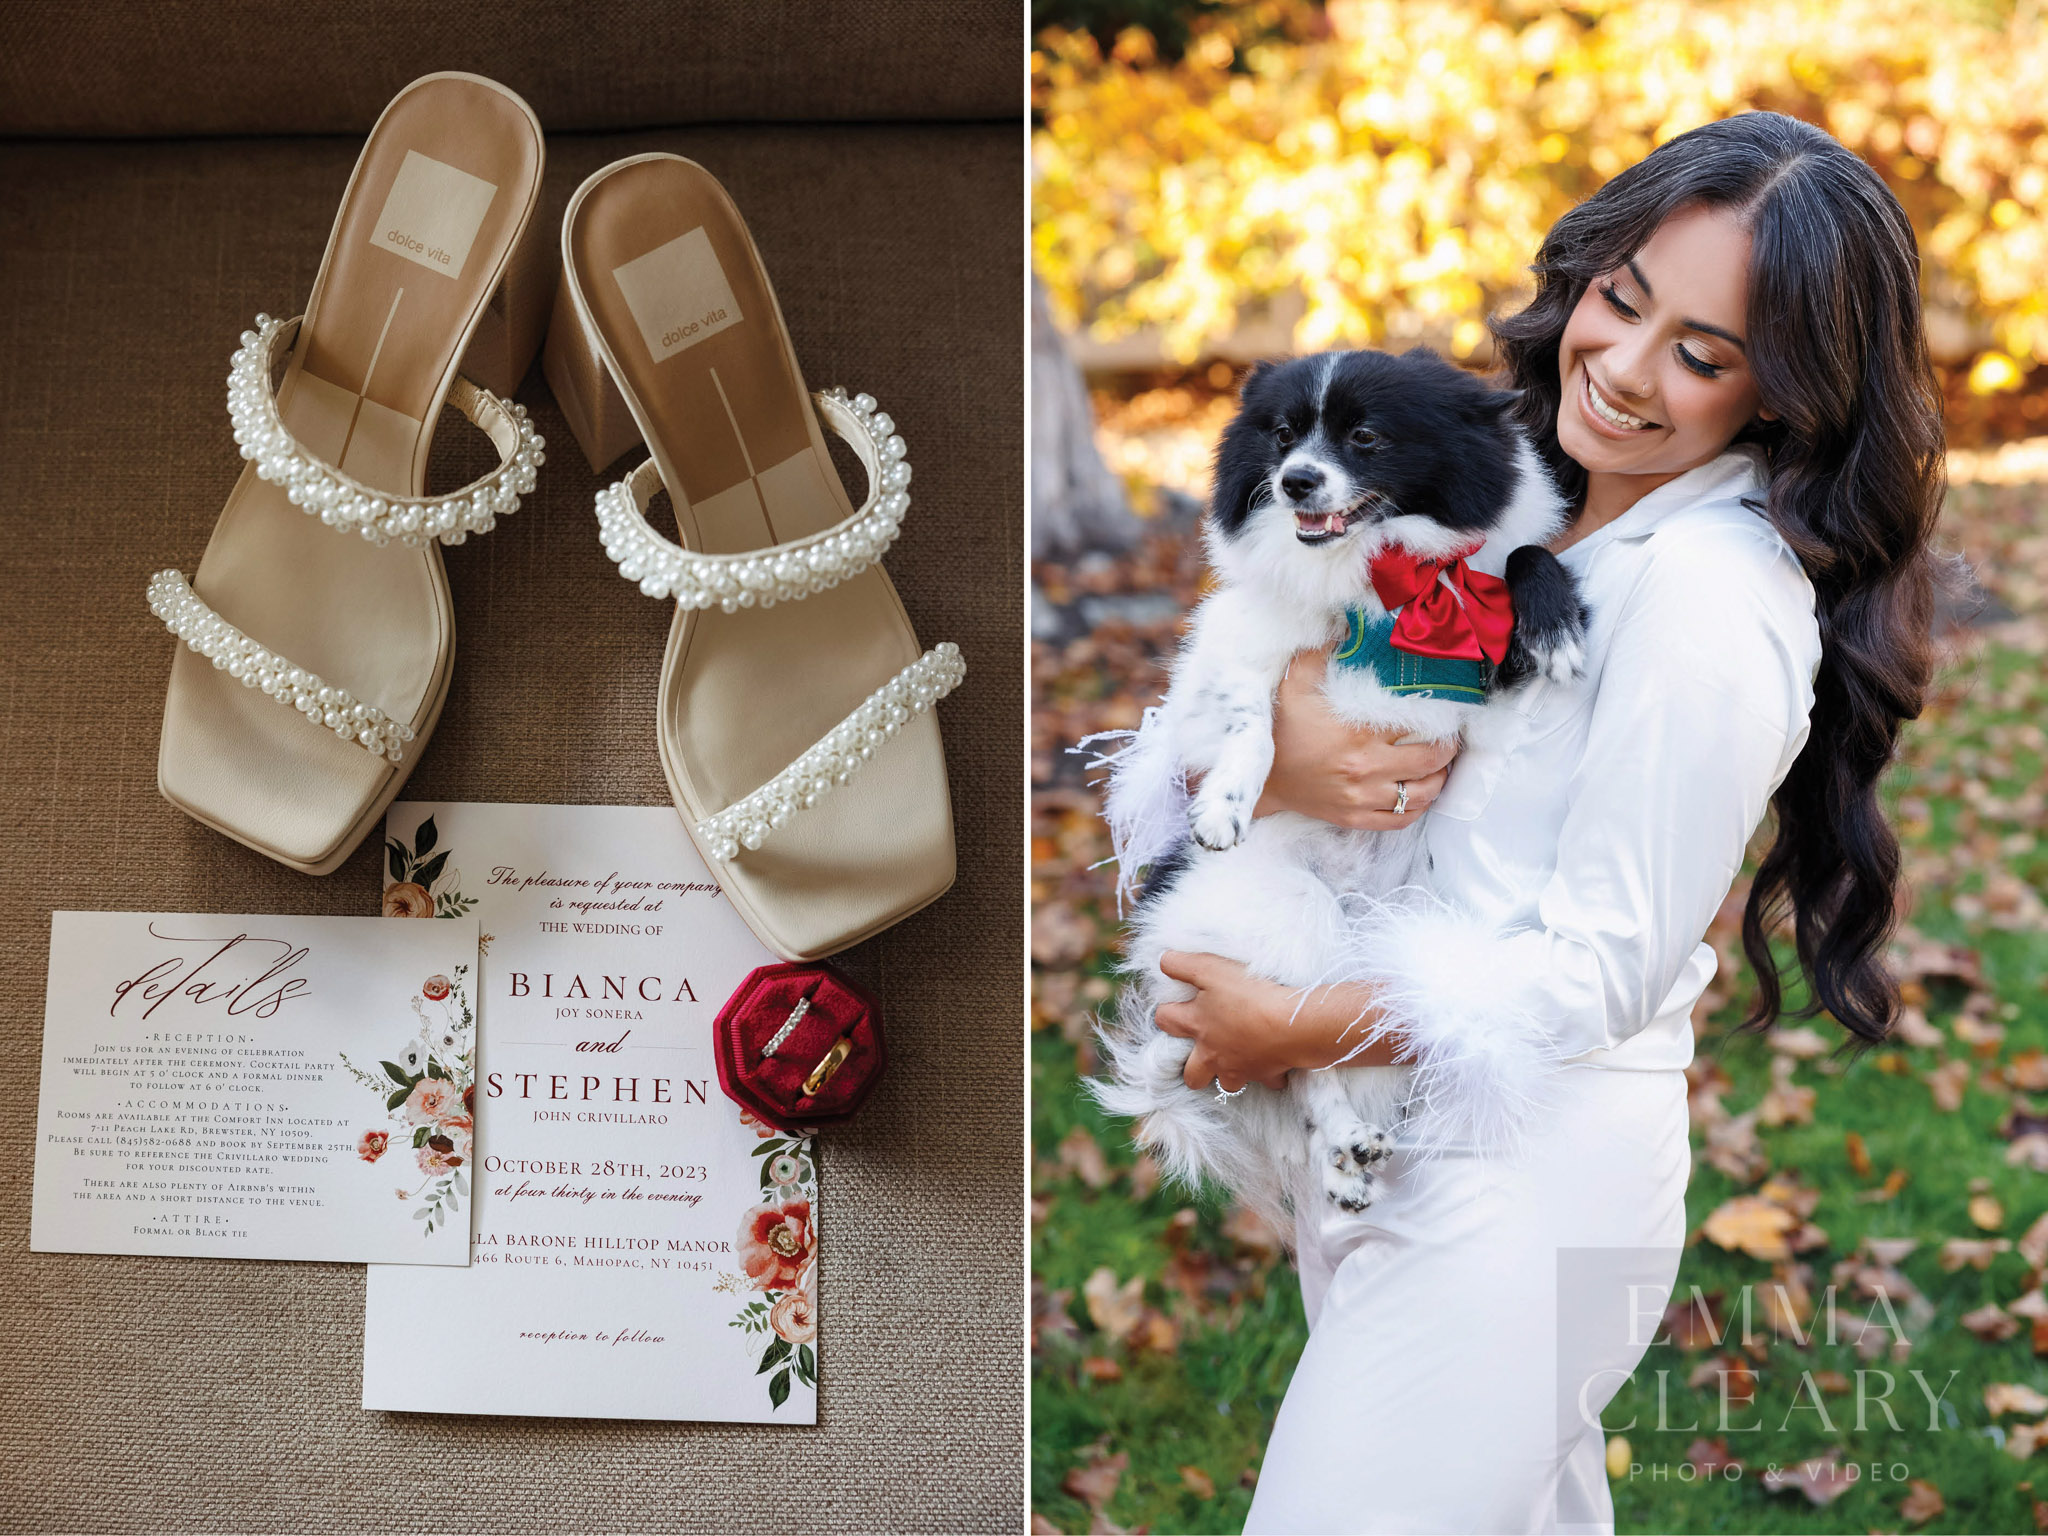 Wedding details, bride and dog